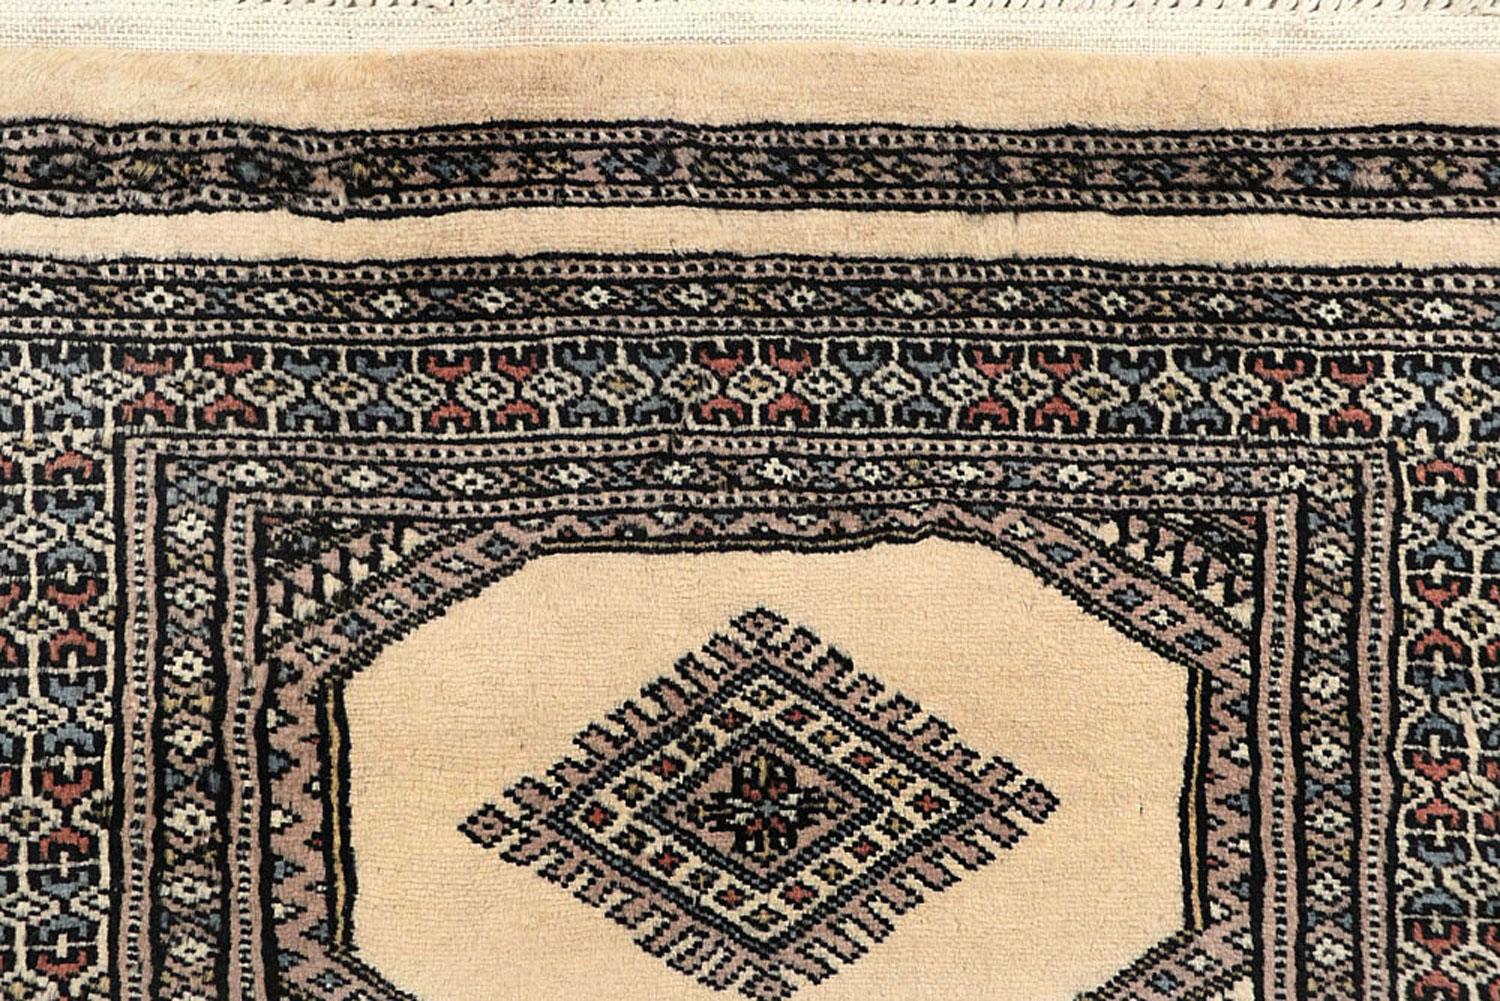 100 Silk Velvet Fabric